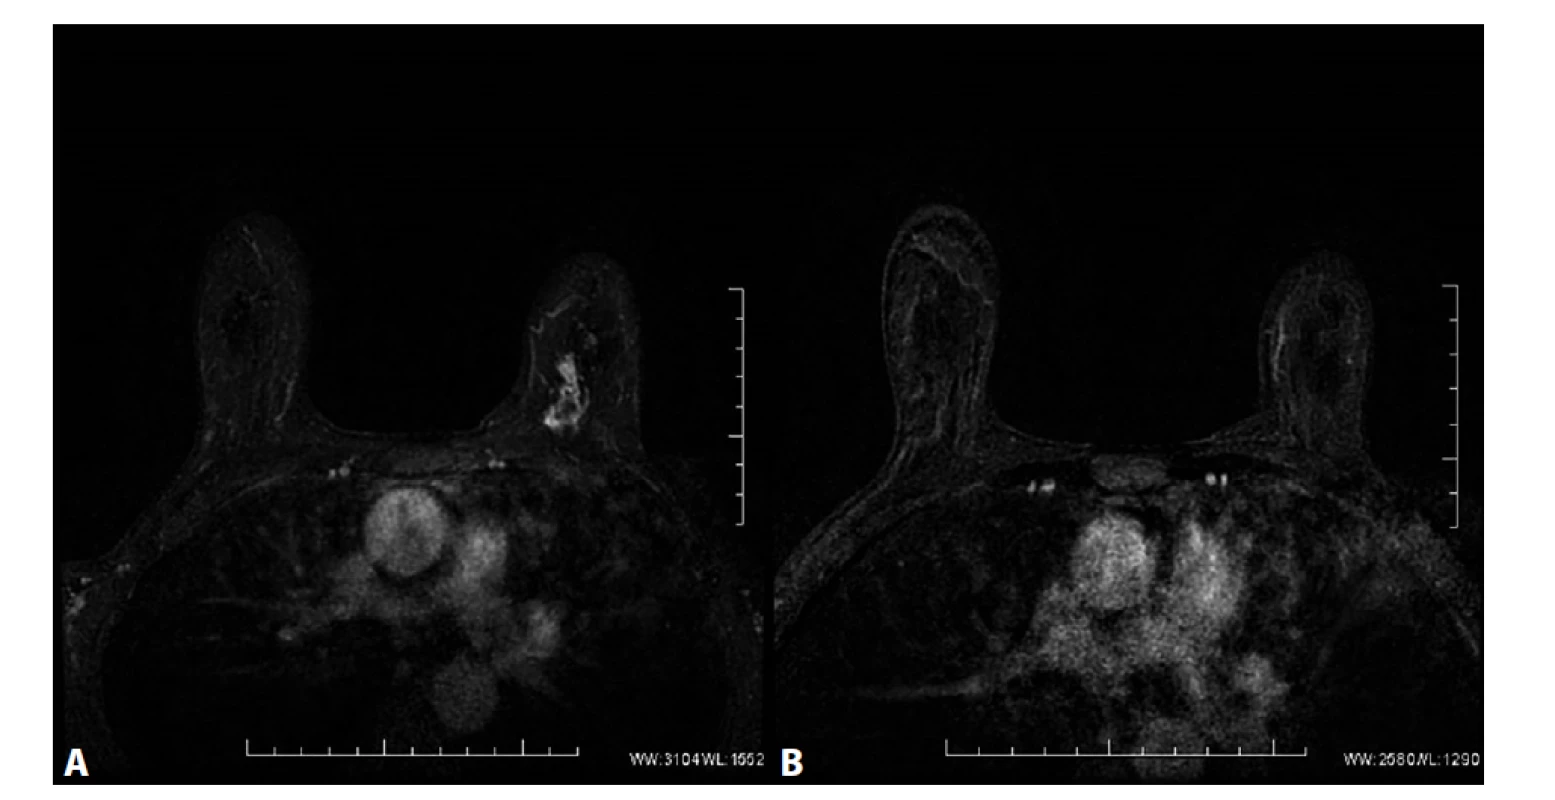 MRM. T1FS ax, kontrastní studie VIBRANT, 2. postkontrastní sekvence, subtrakce<br>
A) Před NCHT. Patologické sycení ložiskového typu v HVK l. sin odpovídající karcinomu. V centrálních oddílech tumoru
výpadek sycení odpovídající nekrotickým změnám ca. B) Po NCHT. Absence sycení po NCHT, bez průkazu rezidua
tumoru, rCR.<br>
Fig. 5: MRI, T1FS ax, contrast study VIBRANT, 2. postcontrast sequence, subtraction<br>
A) Before NCT. Pathological mass enhancement in the UIQ of left breast corresponding to carcinoma. Absence of enhancement
in the central part of the tumour corresponds to necrotic changes. B) After NCT. Absence of enhancement
after NCT, without detection of residual tumour, rCR.